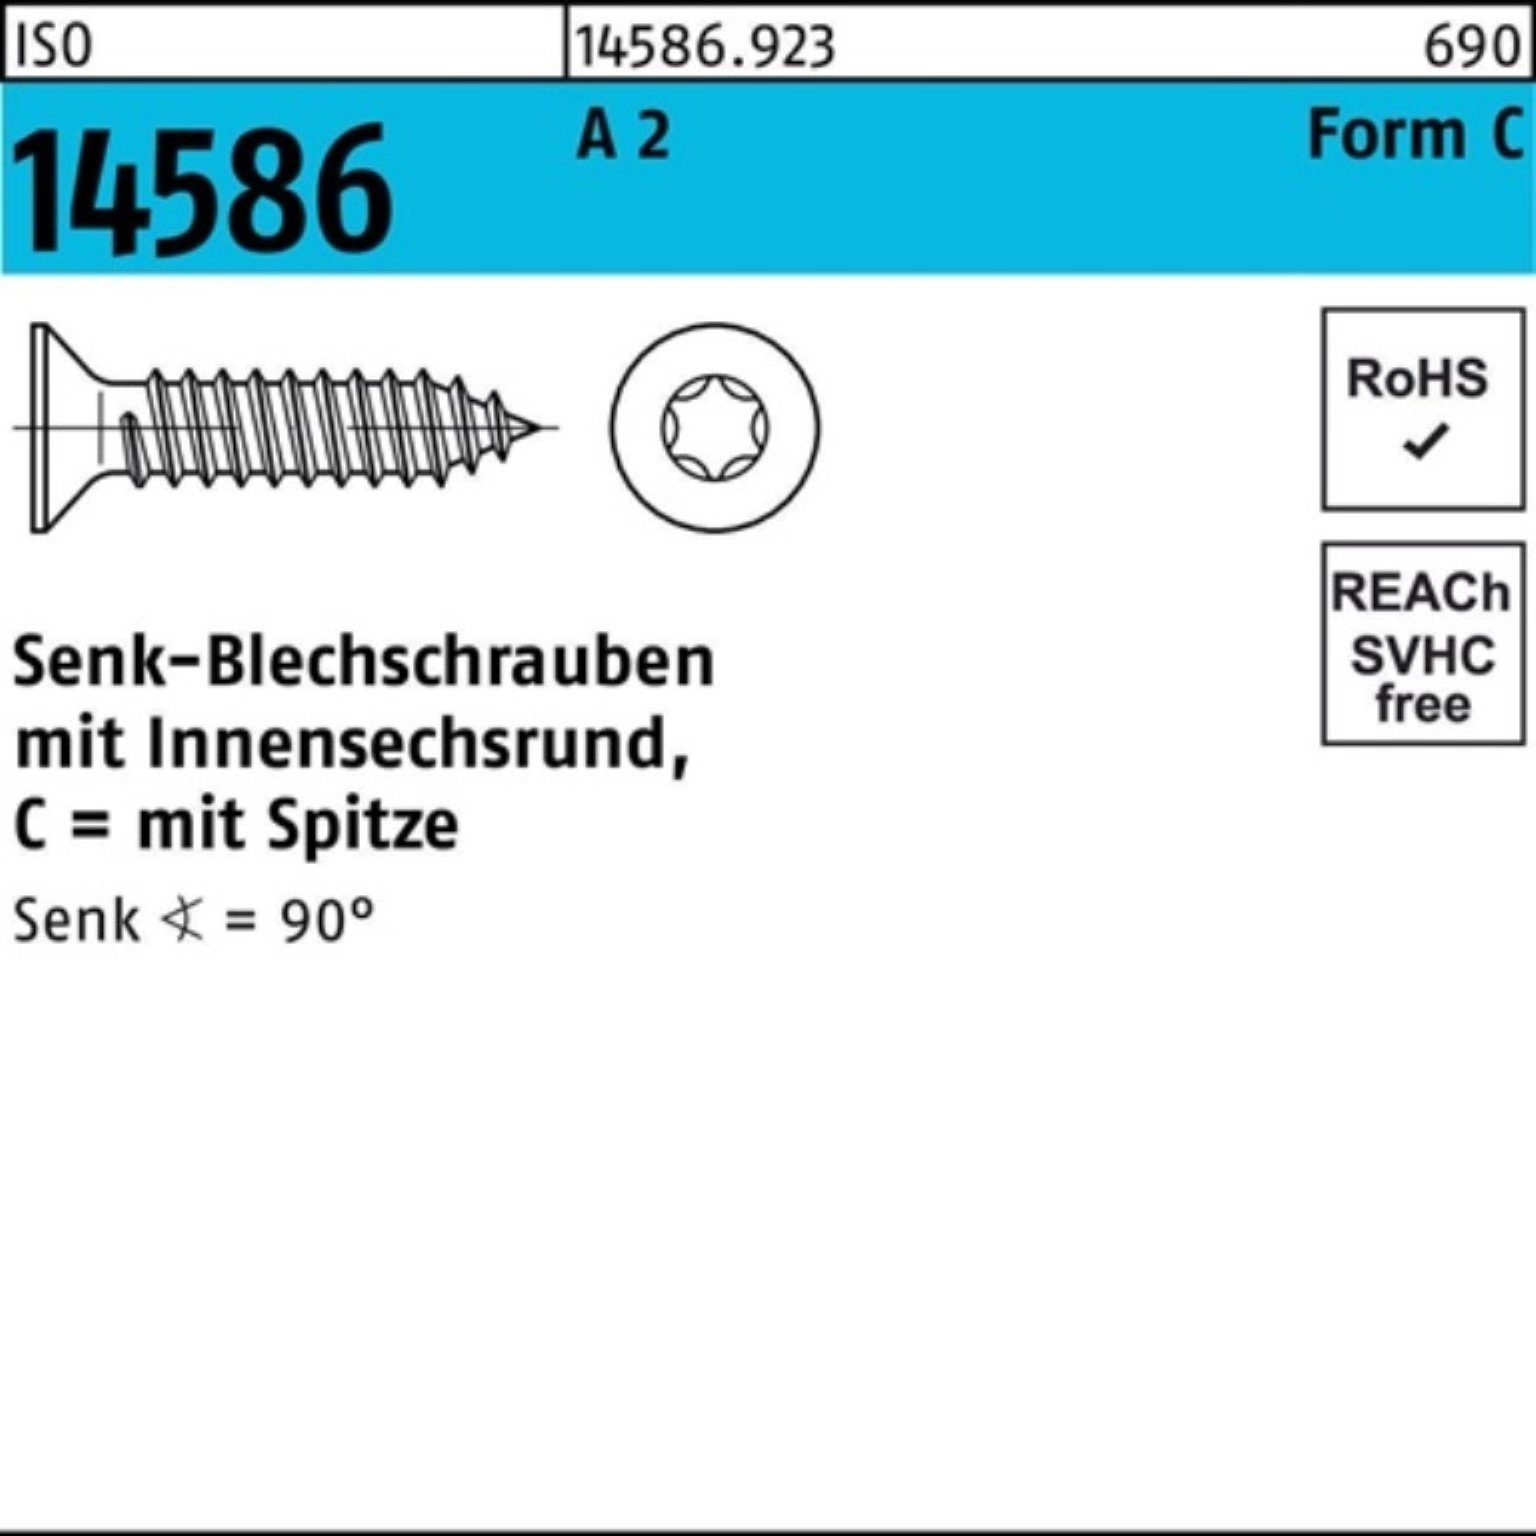 50 T25 Pack ISR/Spitze 250er -C A Senkblechschraube 14586 Schraube 4,8x 2 2 Reyher ISO